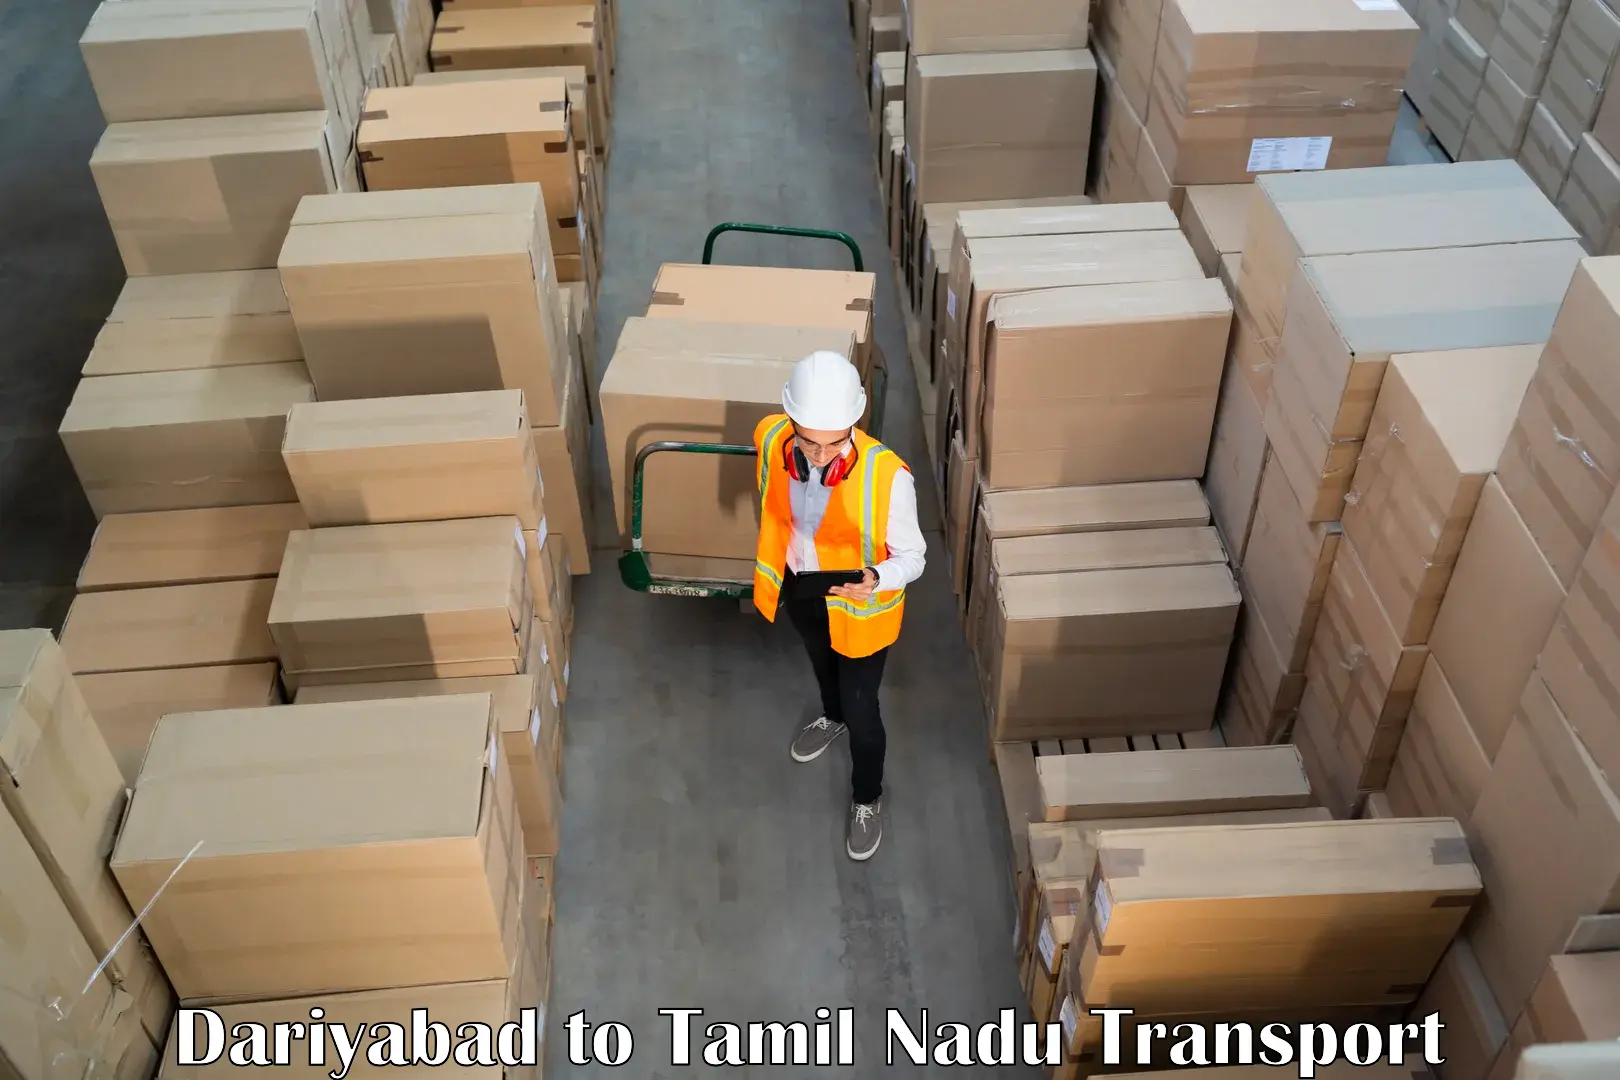 Container transport service Dariyabad to Uthangarai